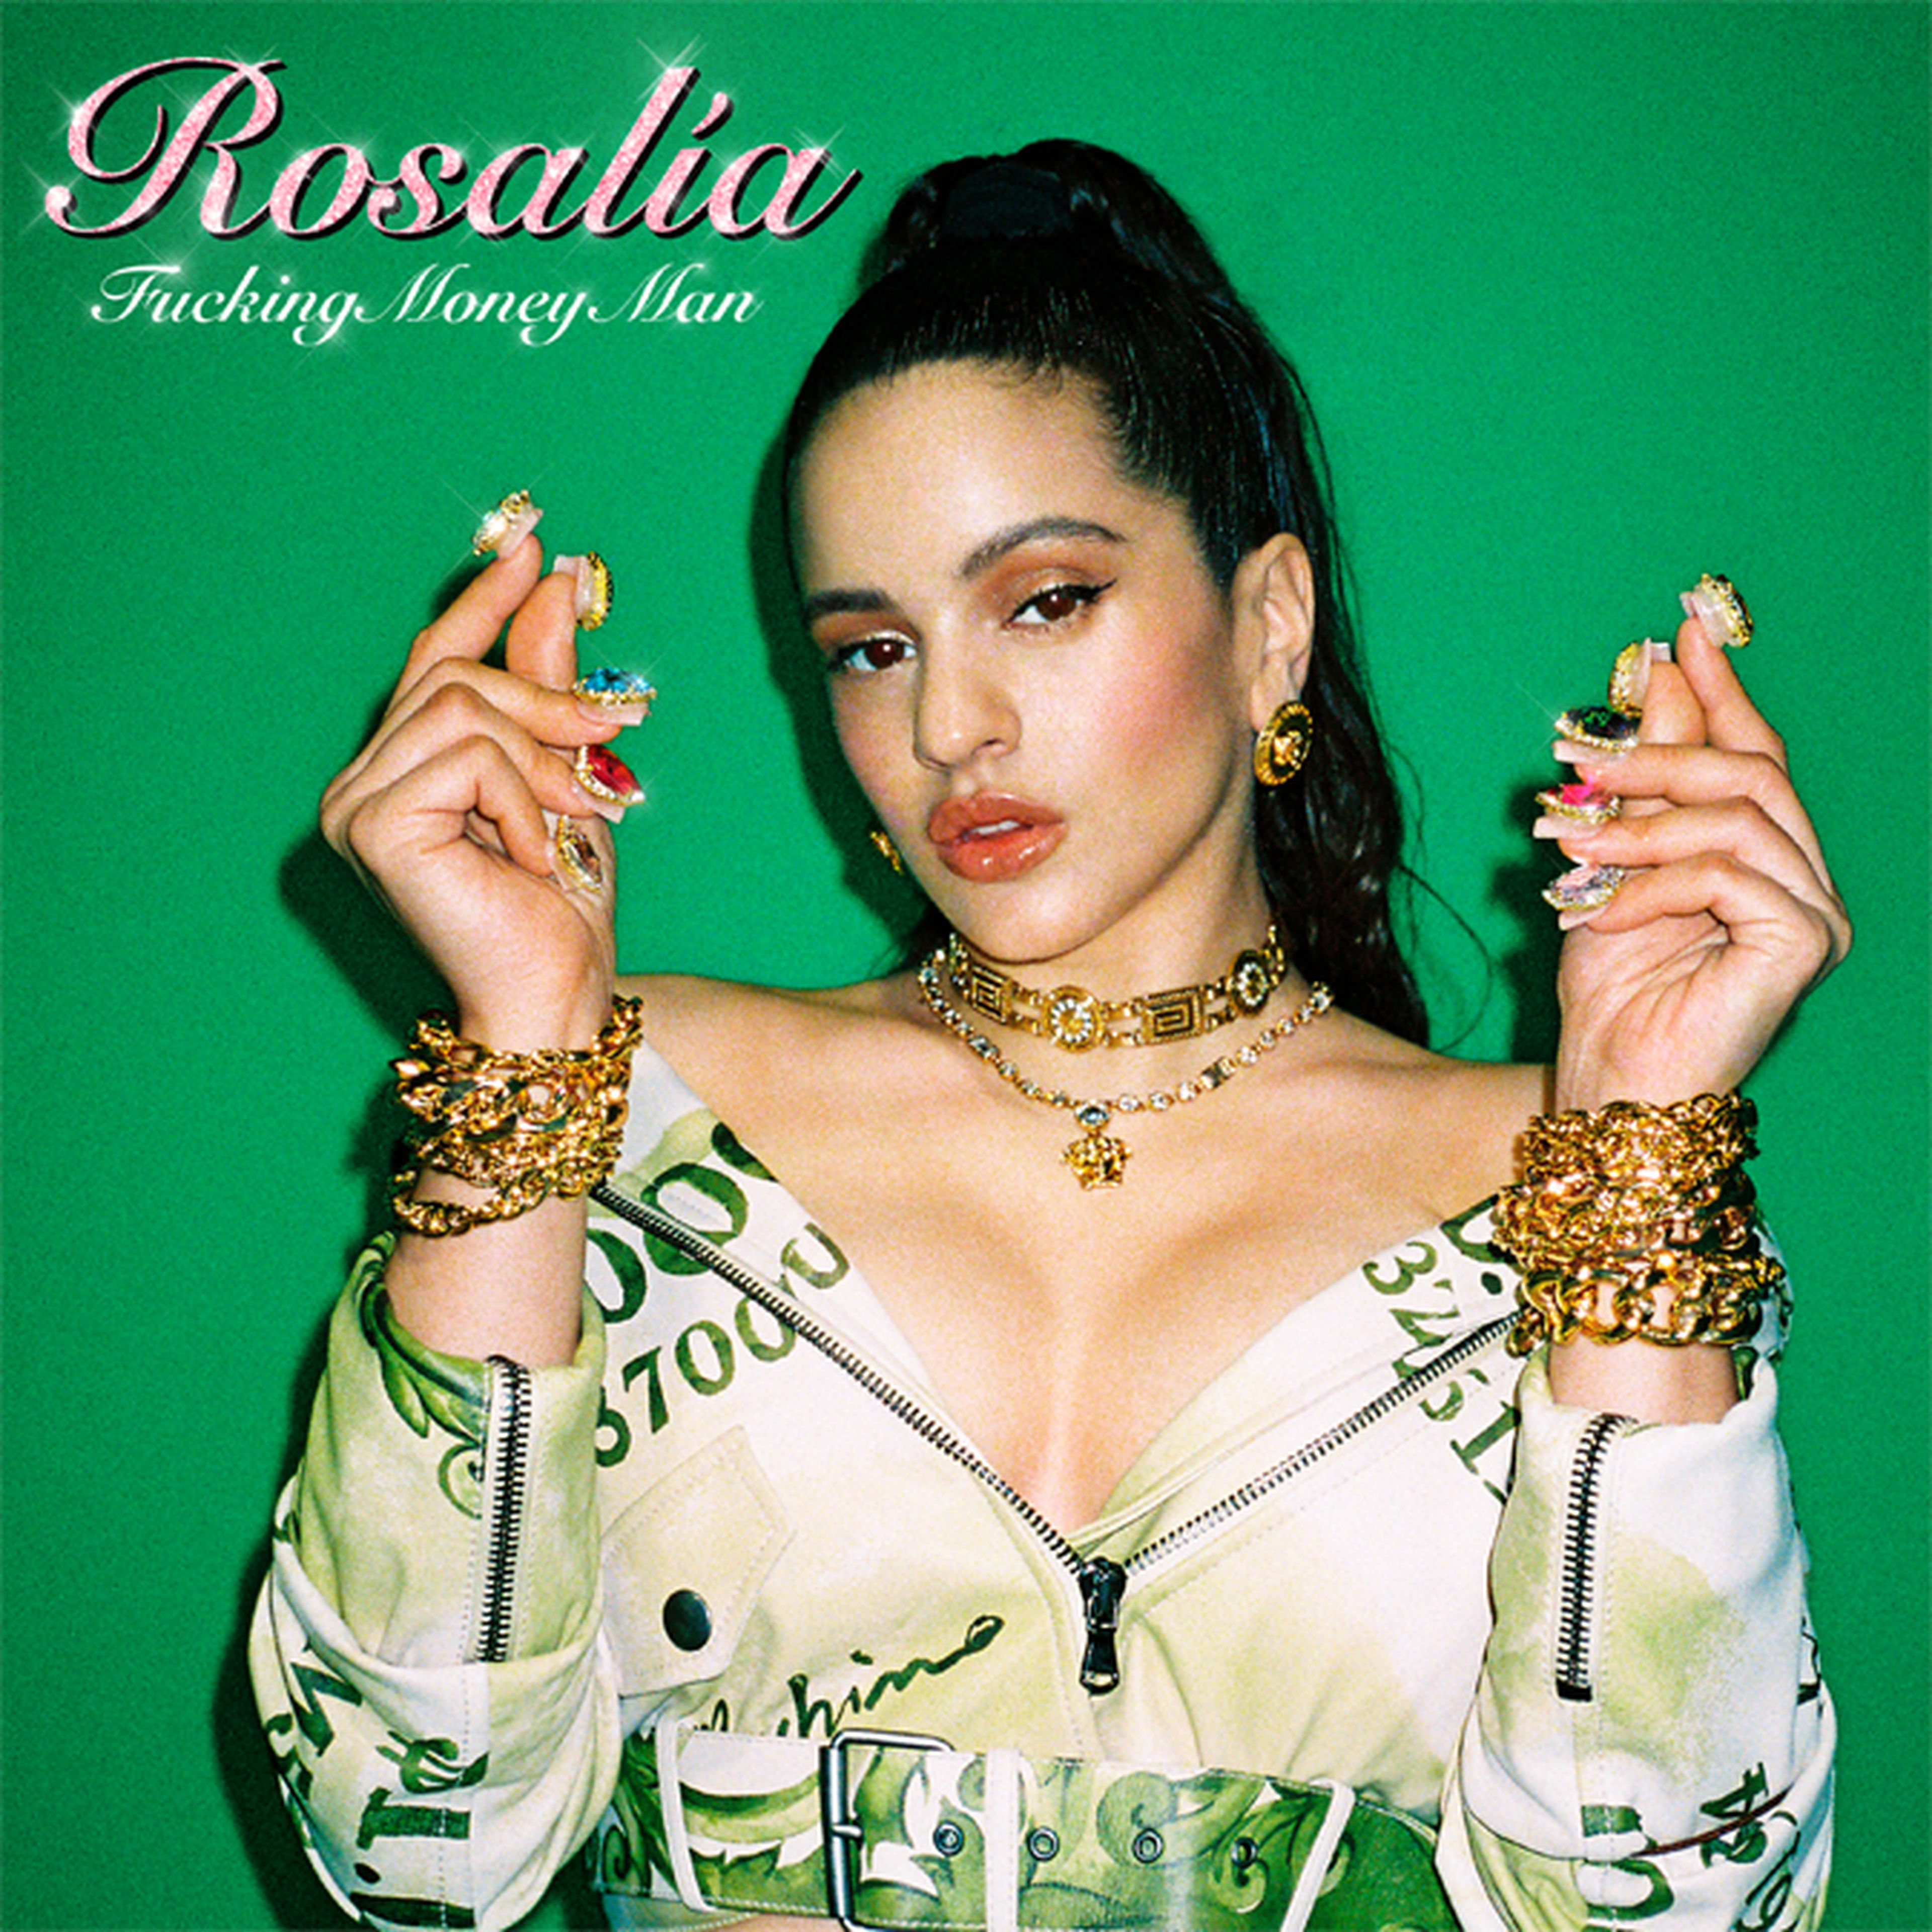 Fucking Money Man, el nuevo single de Rosalía.